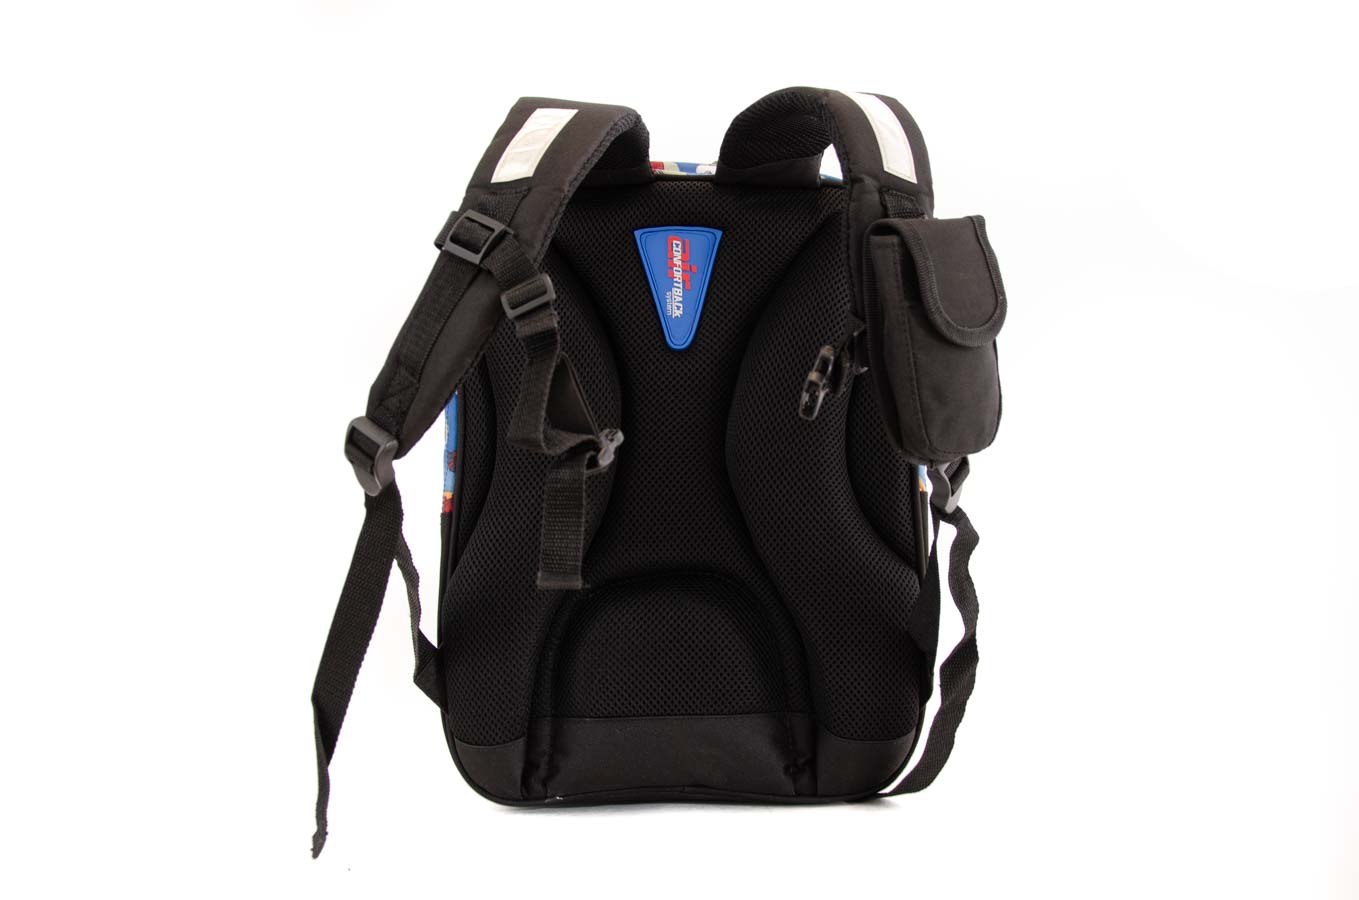 RU8007 School Backpack 18 L Dinos